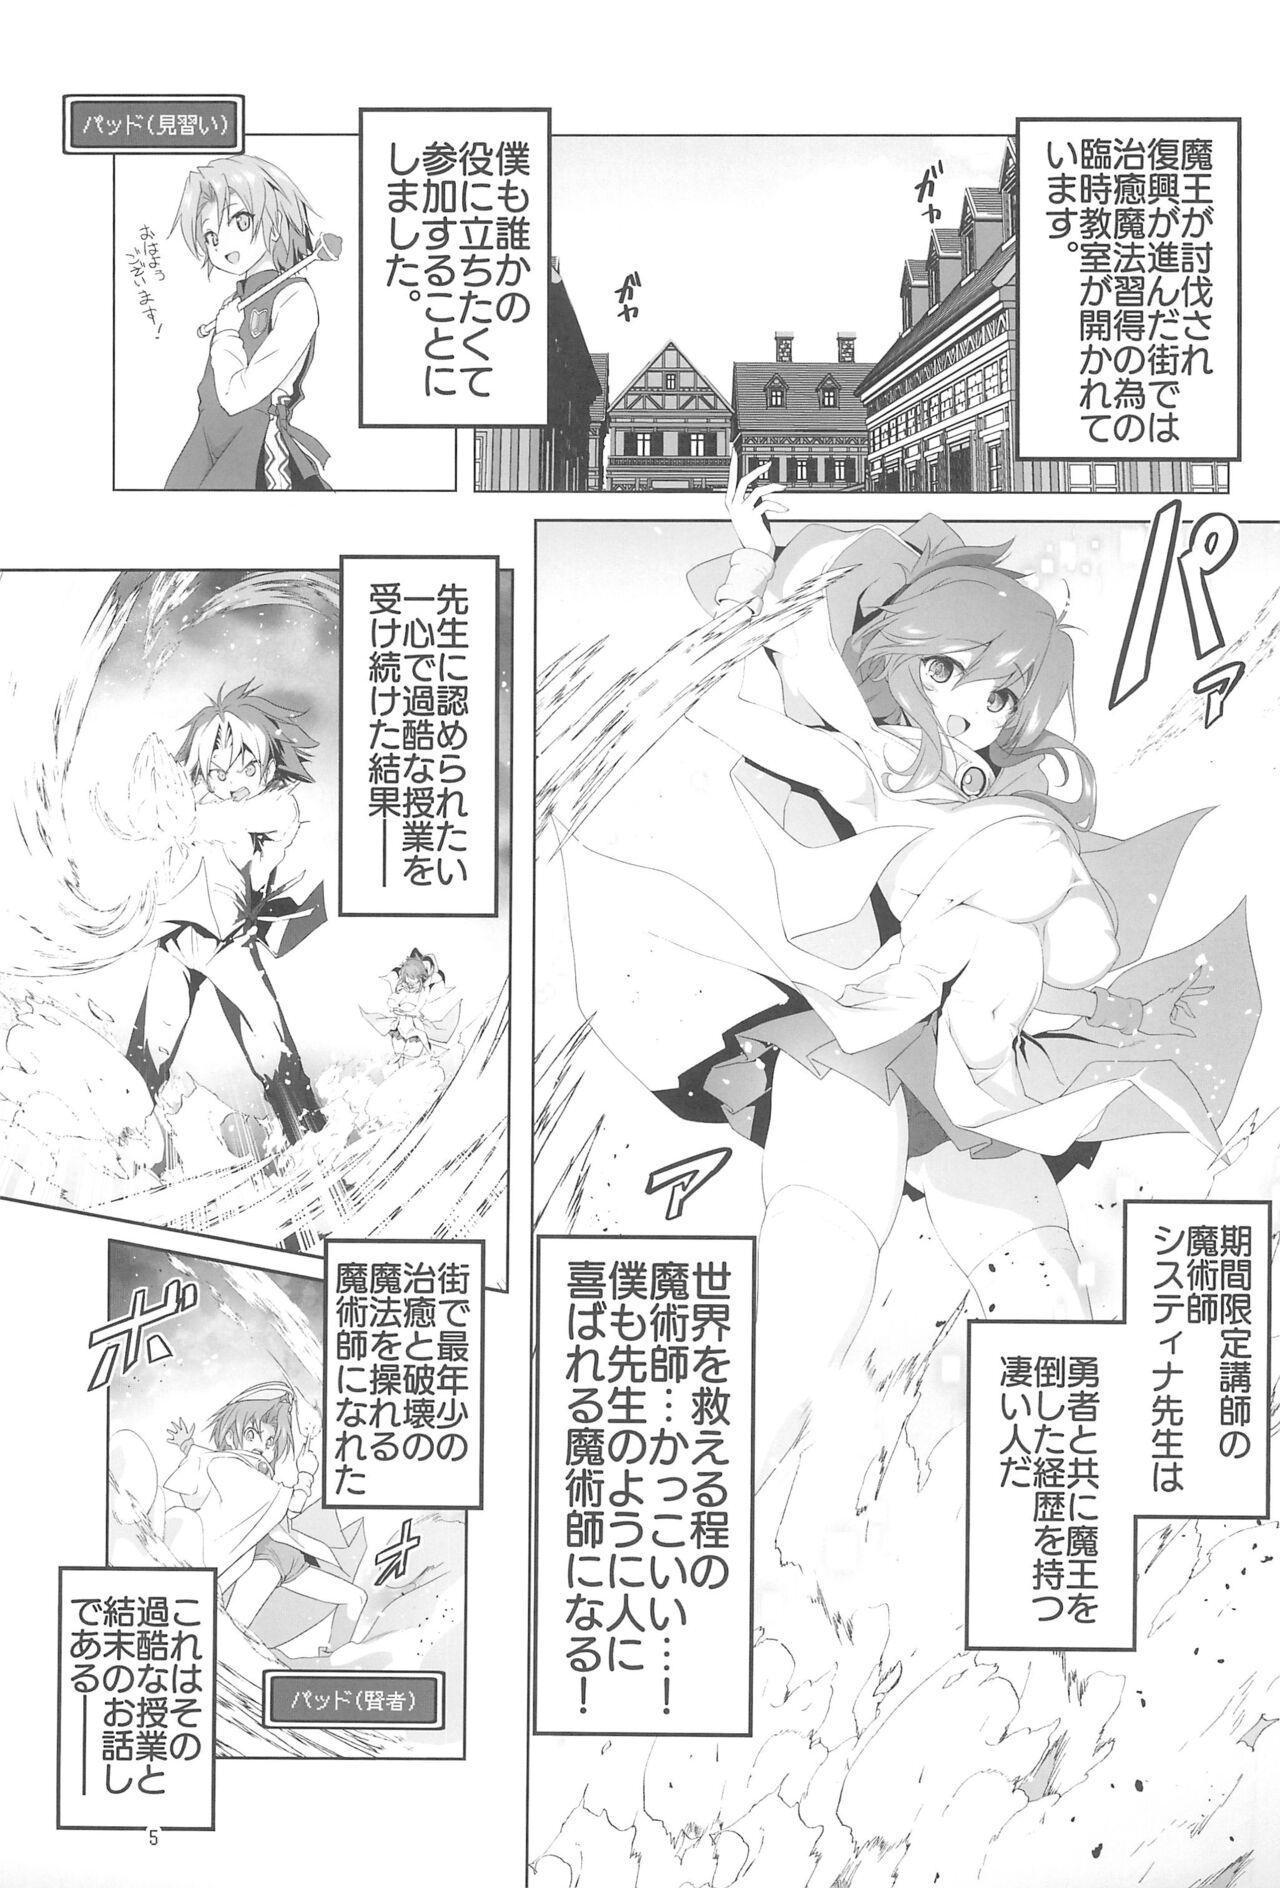 Long Hair Makotoni Zannen desu ga Bouken no Sho 9 wa Kiete Shimaimashita. - Original Bigbutt - Page 5